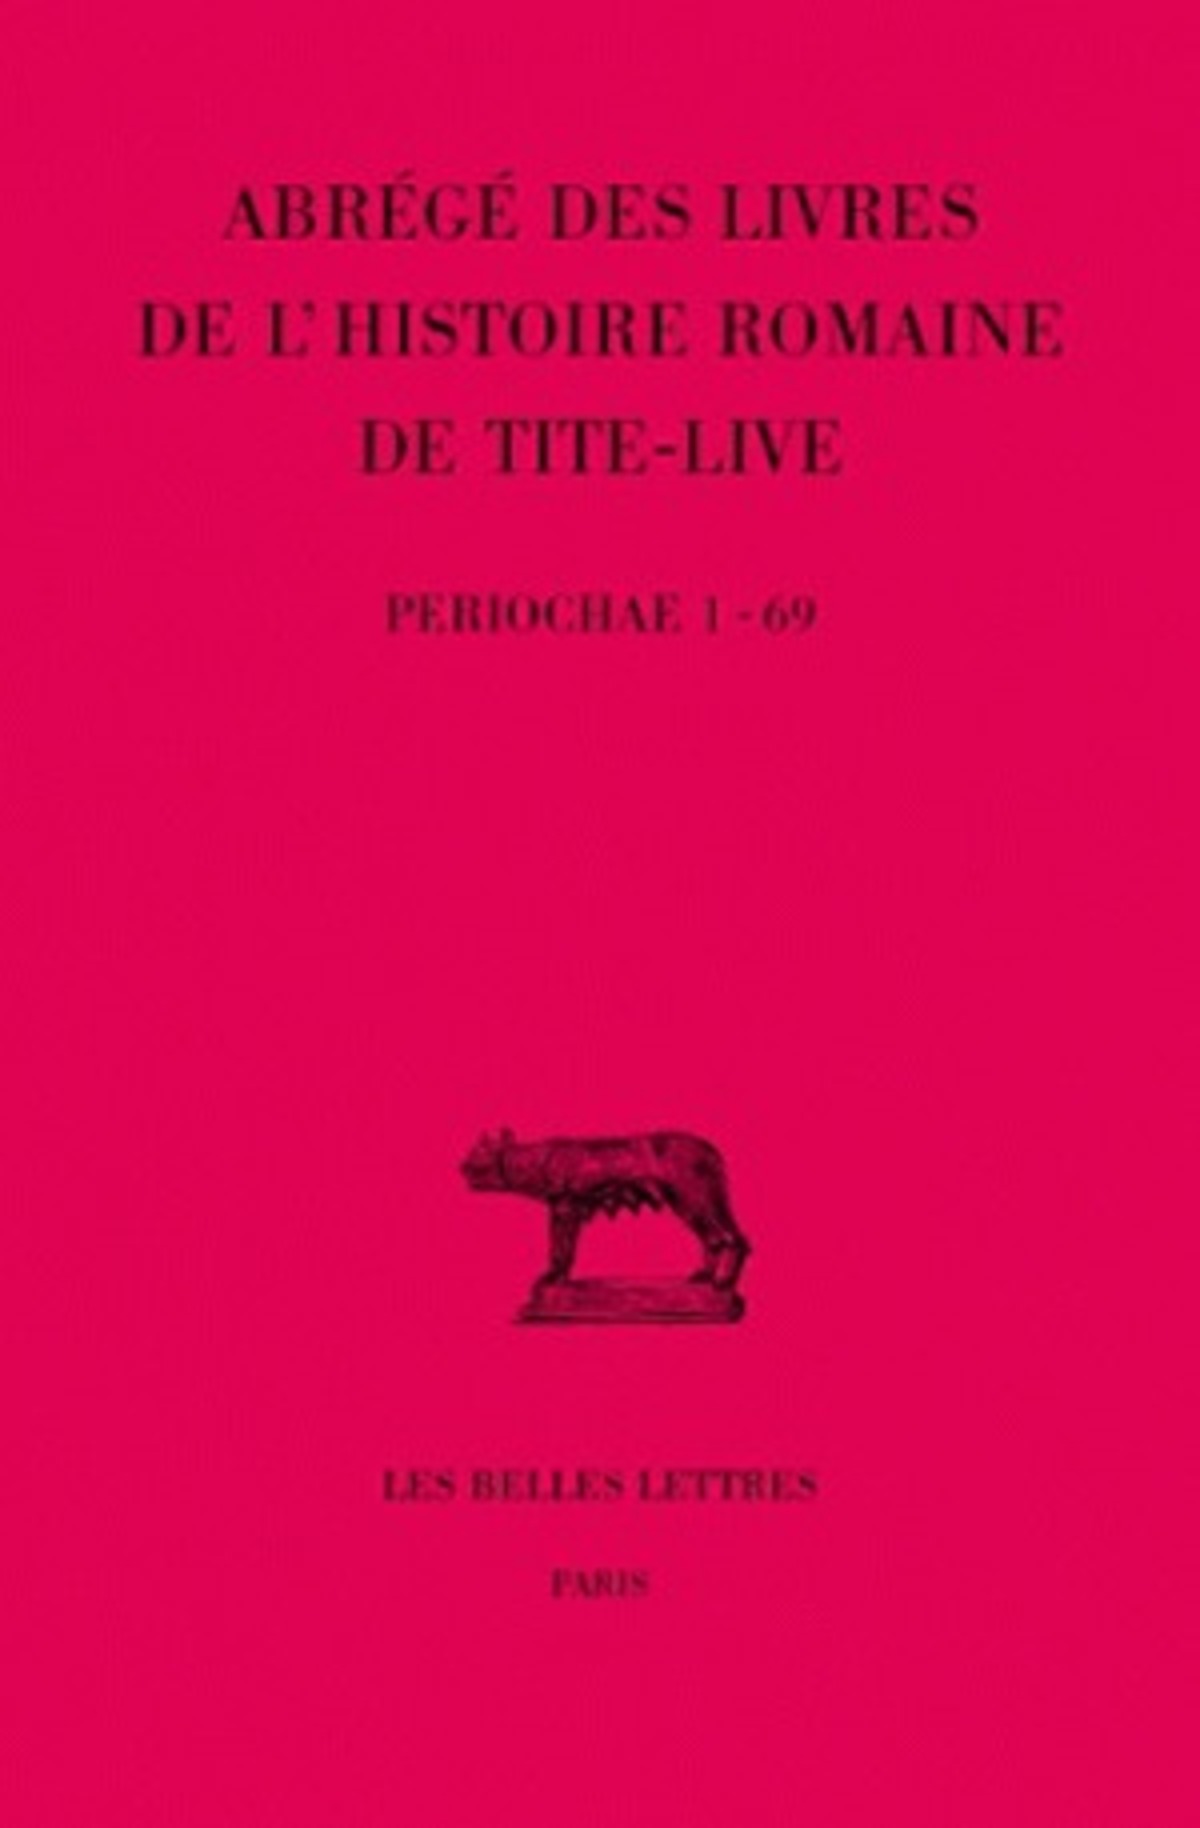 Abrégés des livres de l'Histoire romaine de Tite-Live Tome XXXIV- , 1re partie : "Periochae" transmises par les manuscrits (Periochae 1-69)